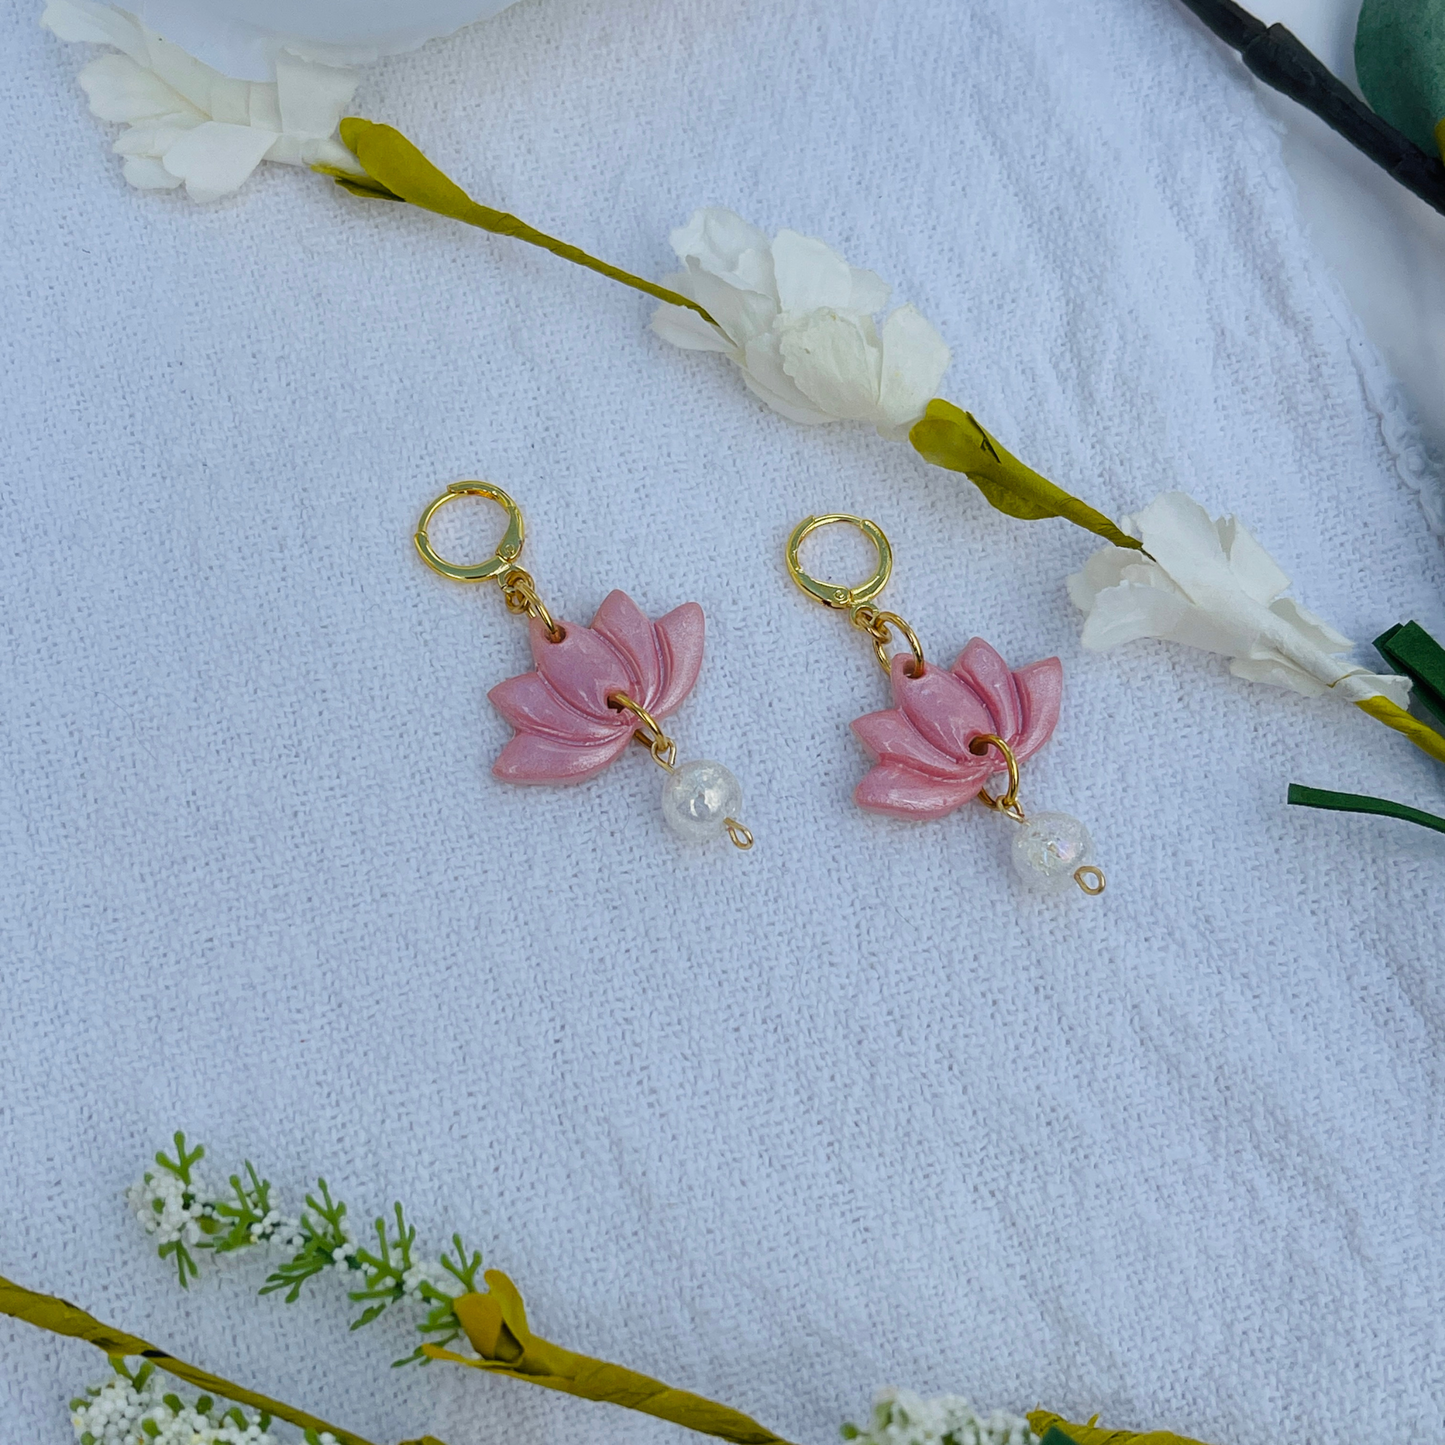 The Pink Lotus Earrings